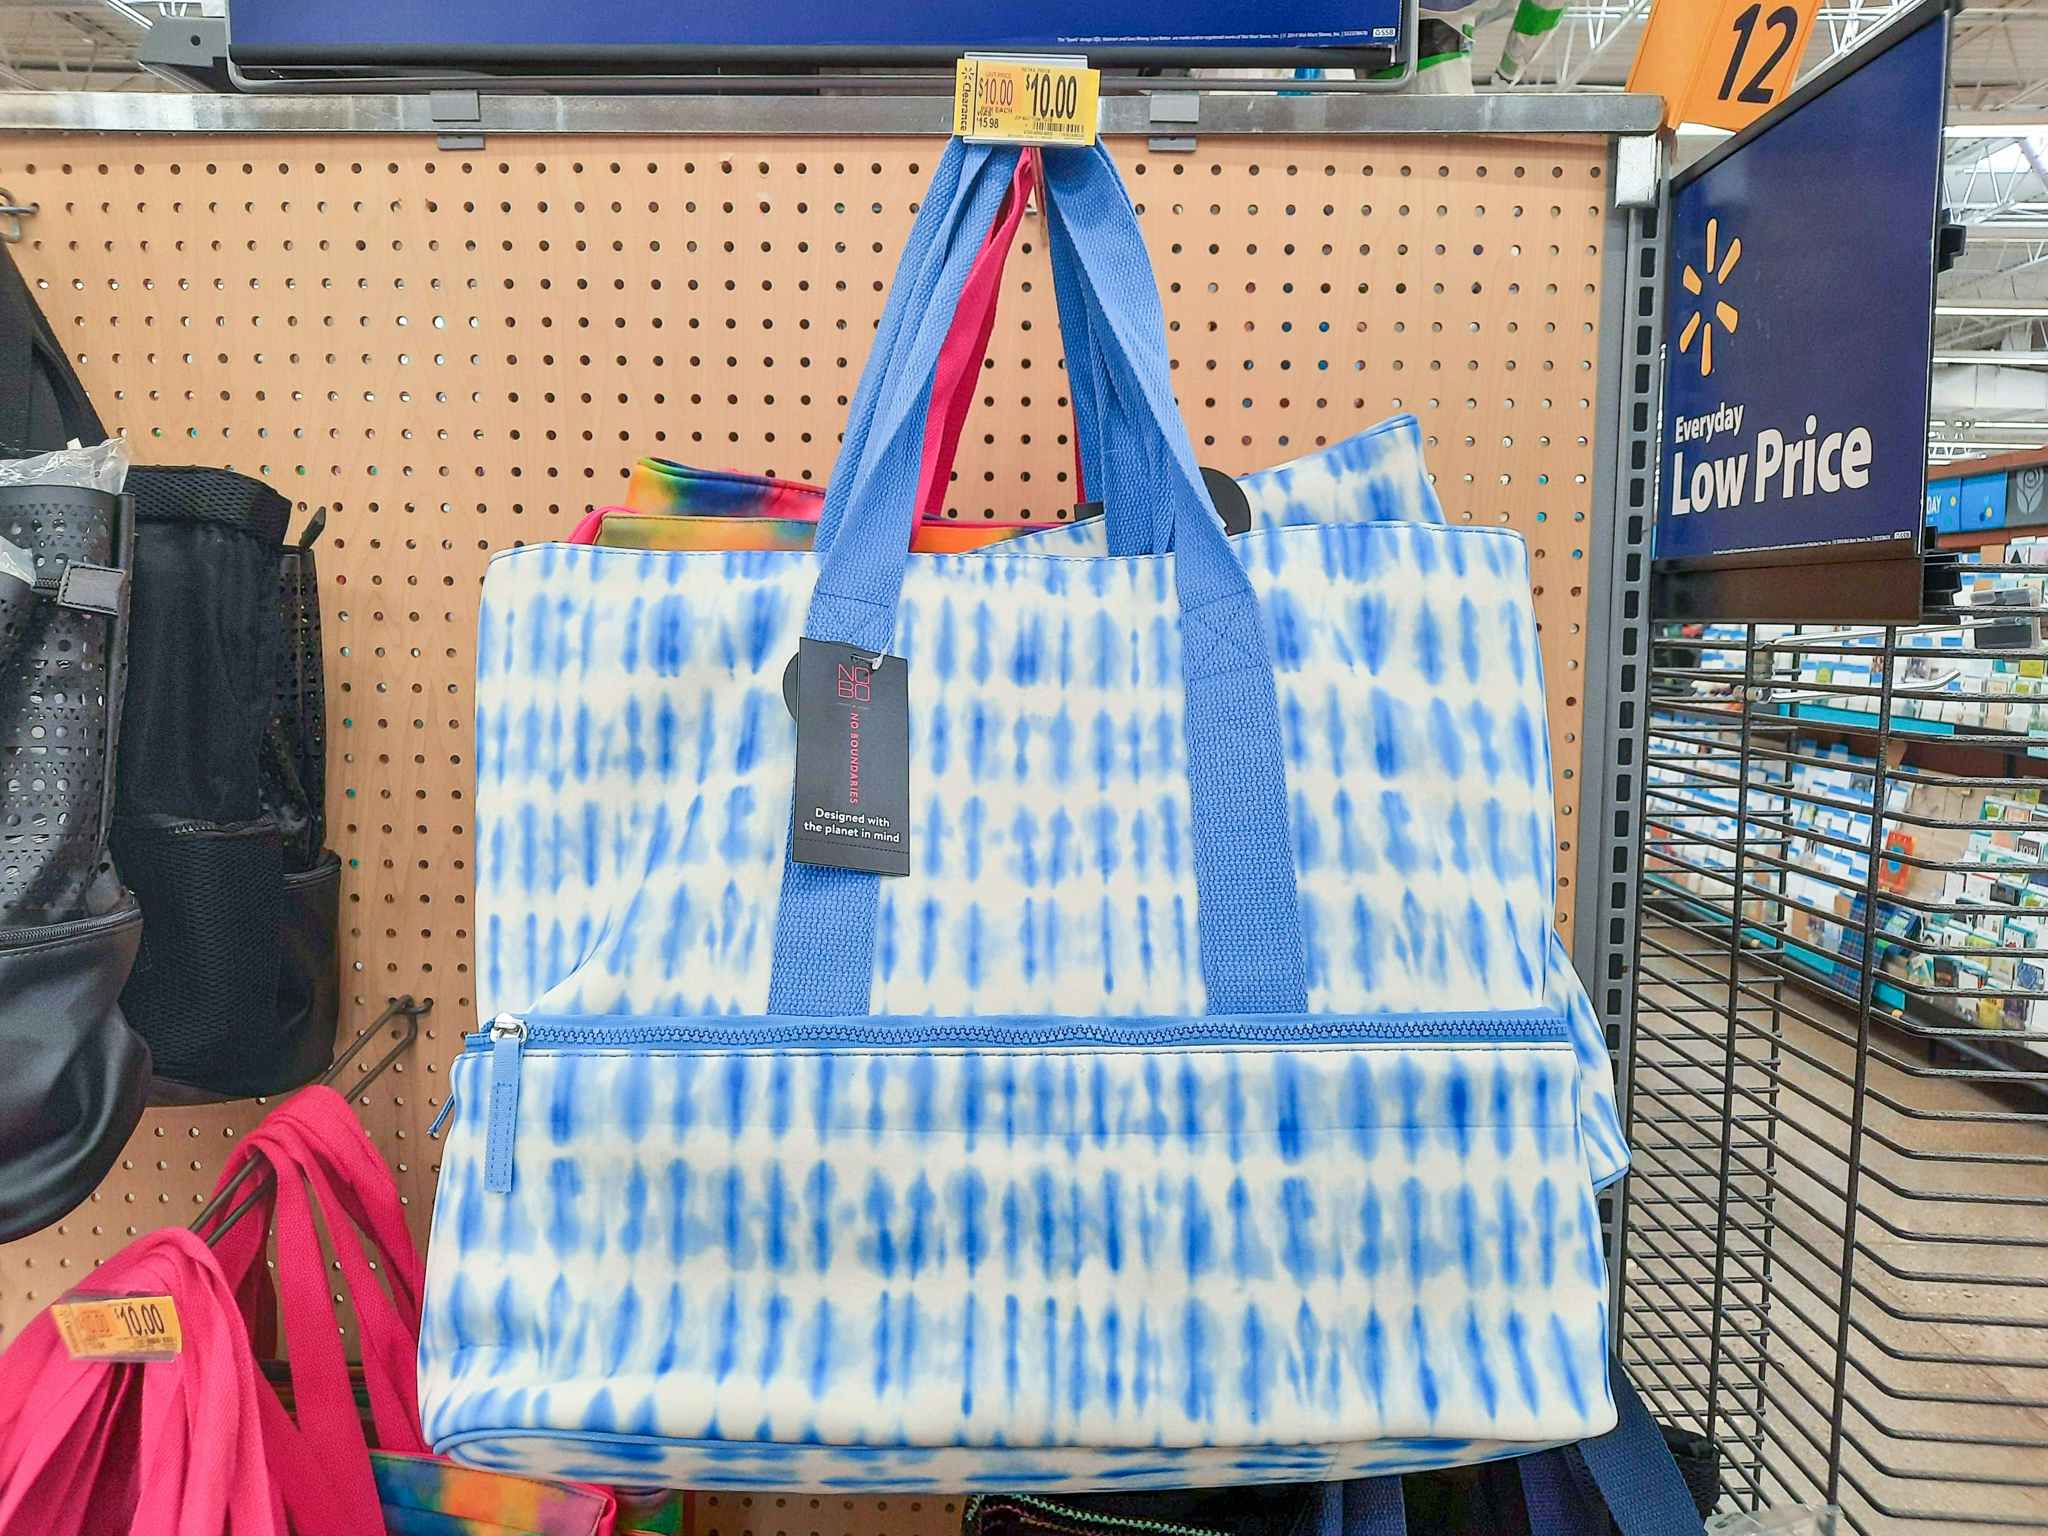 No Boundaries Beach Tote Bag With Cooler Bottom at Walmart